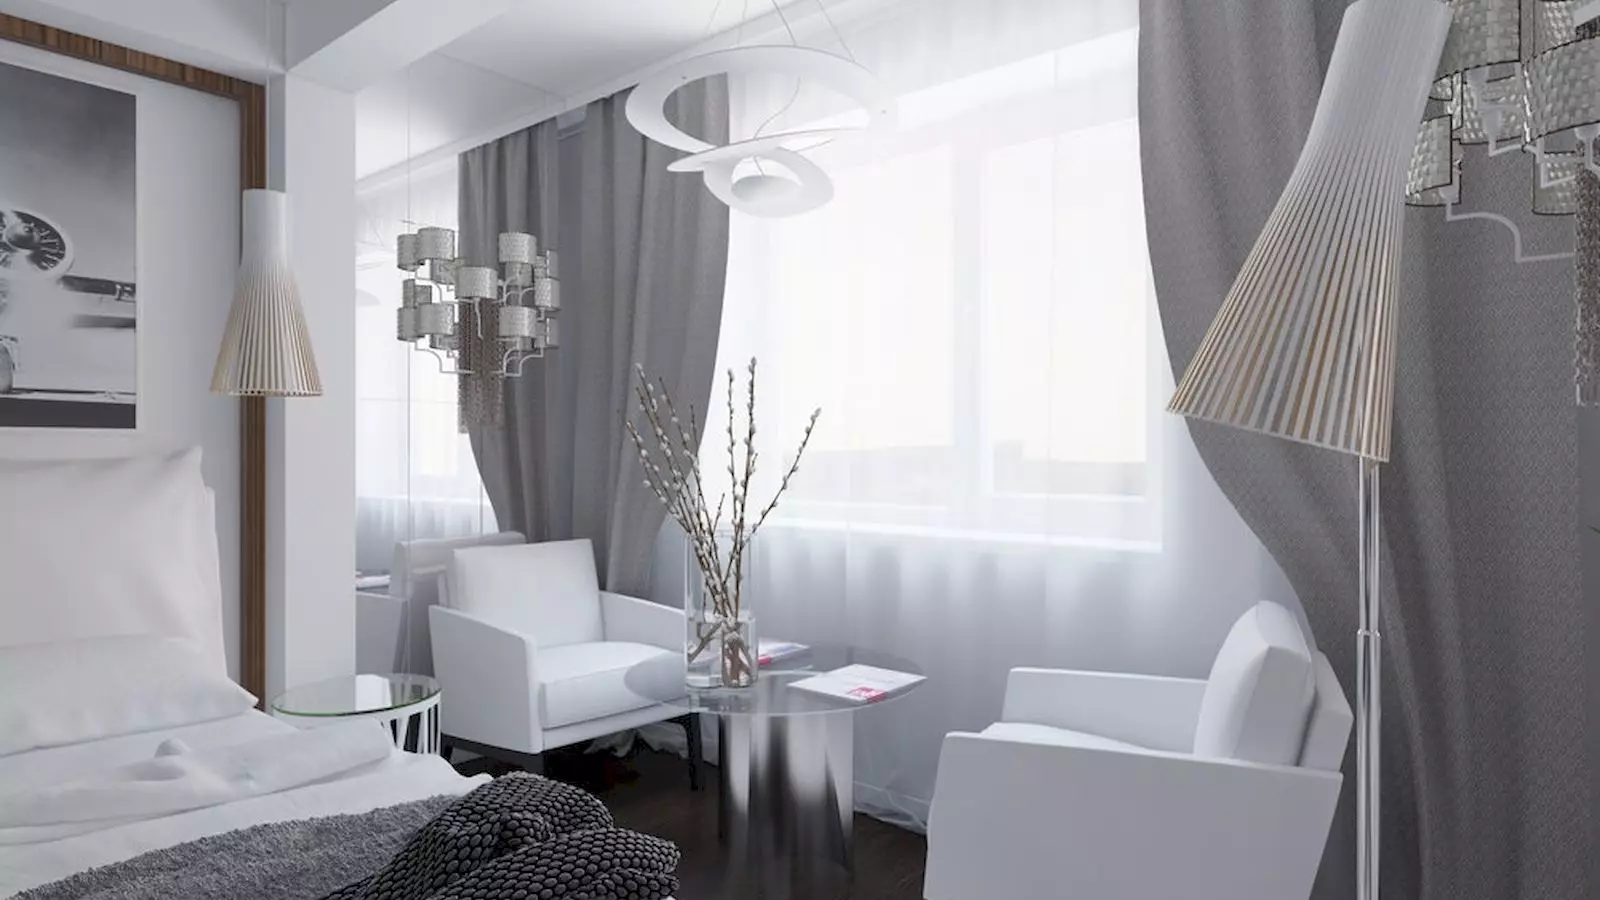 침실의 흰색 커튼 (35 사진) : 흑백과 흰색 커튼이있는 아름다운 인테리어의 예, 흥미로운 새로운 항목 21295_16